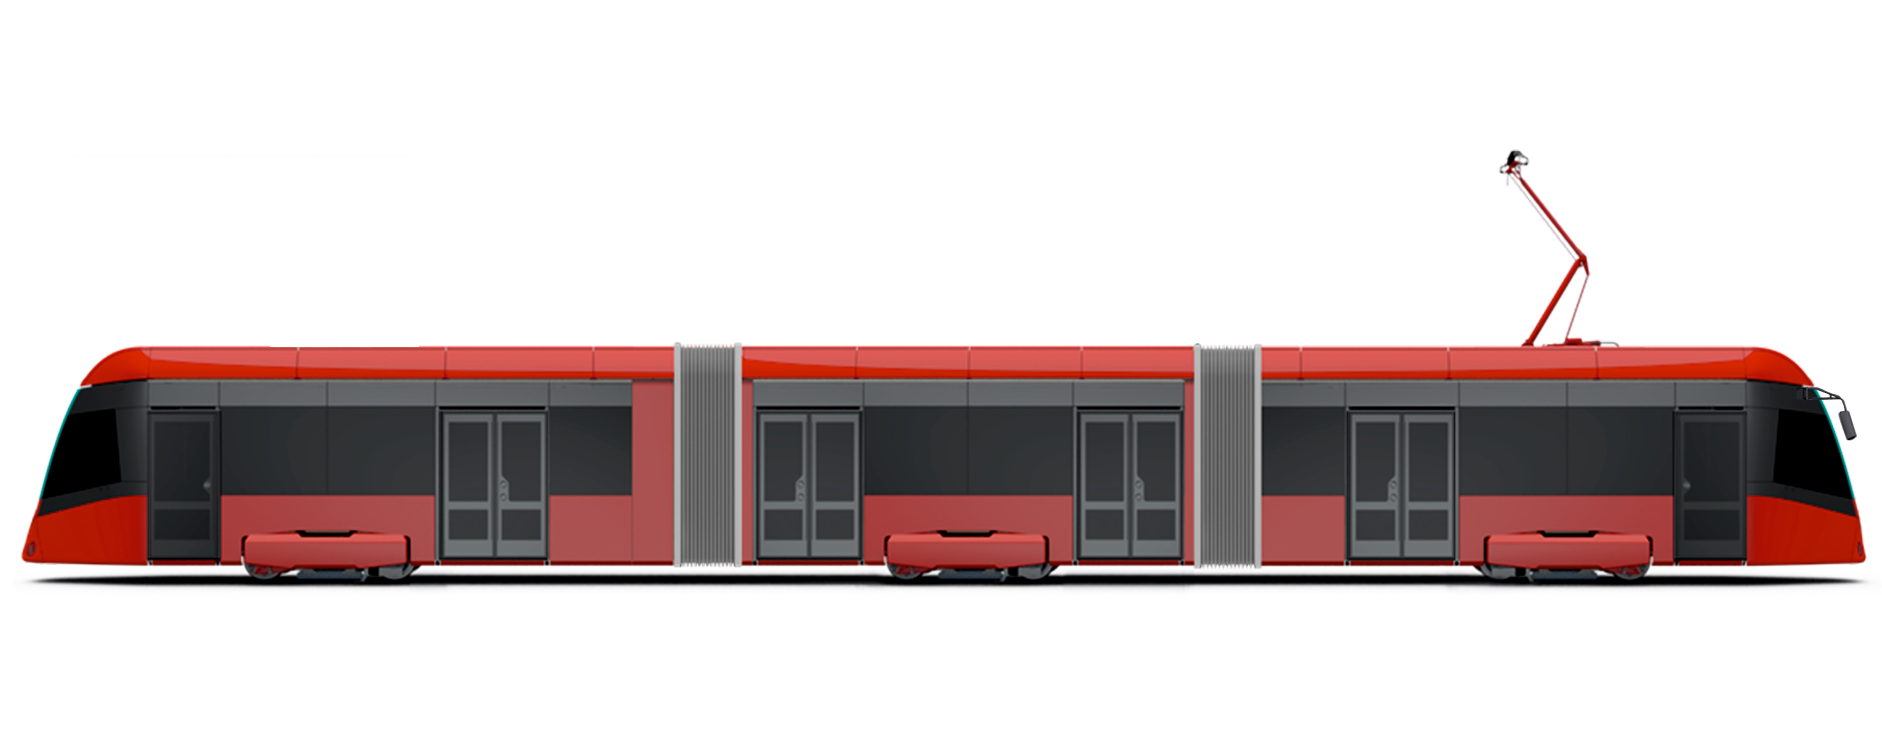 Rendering of the Т856 tram by BKM Holding for Nizhny Novgorod